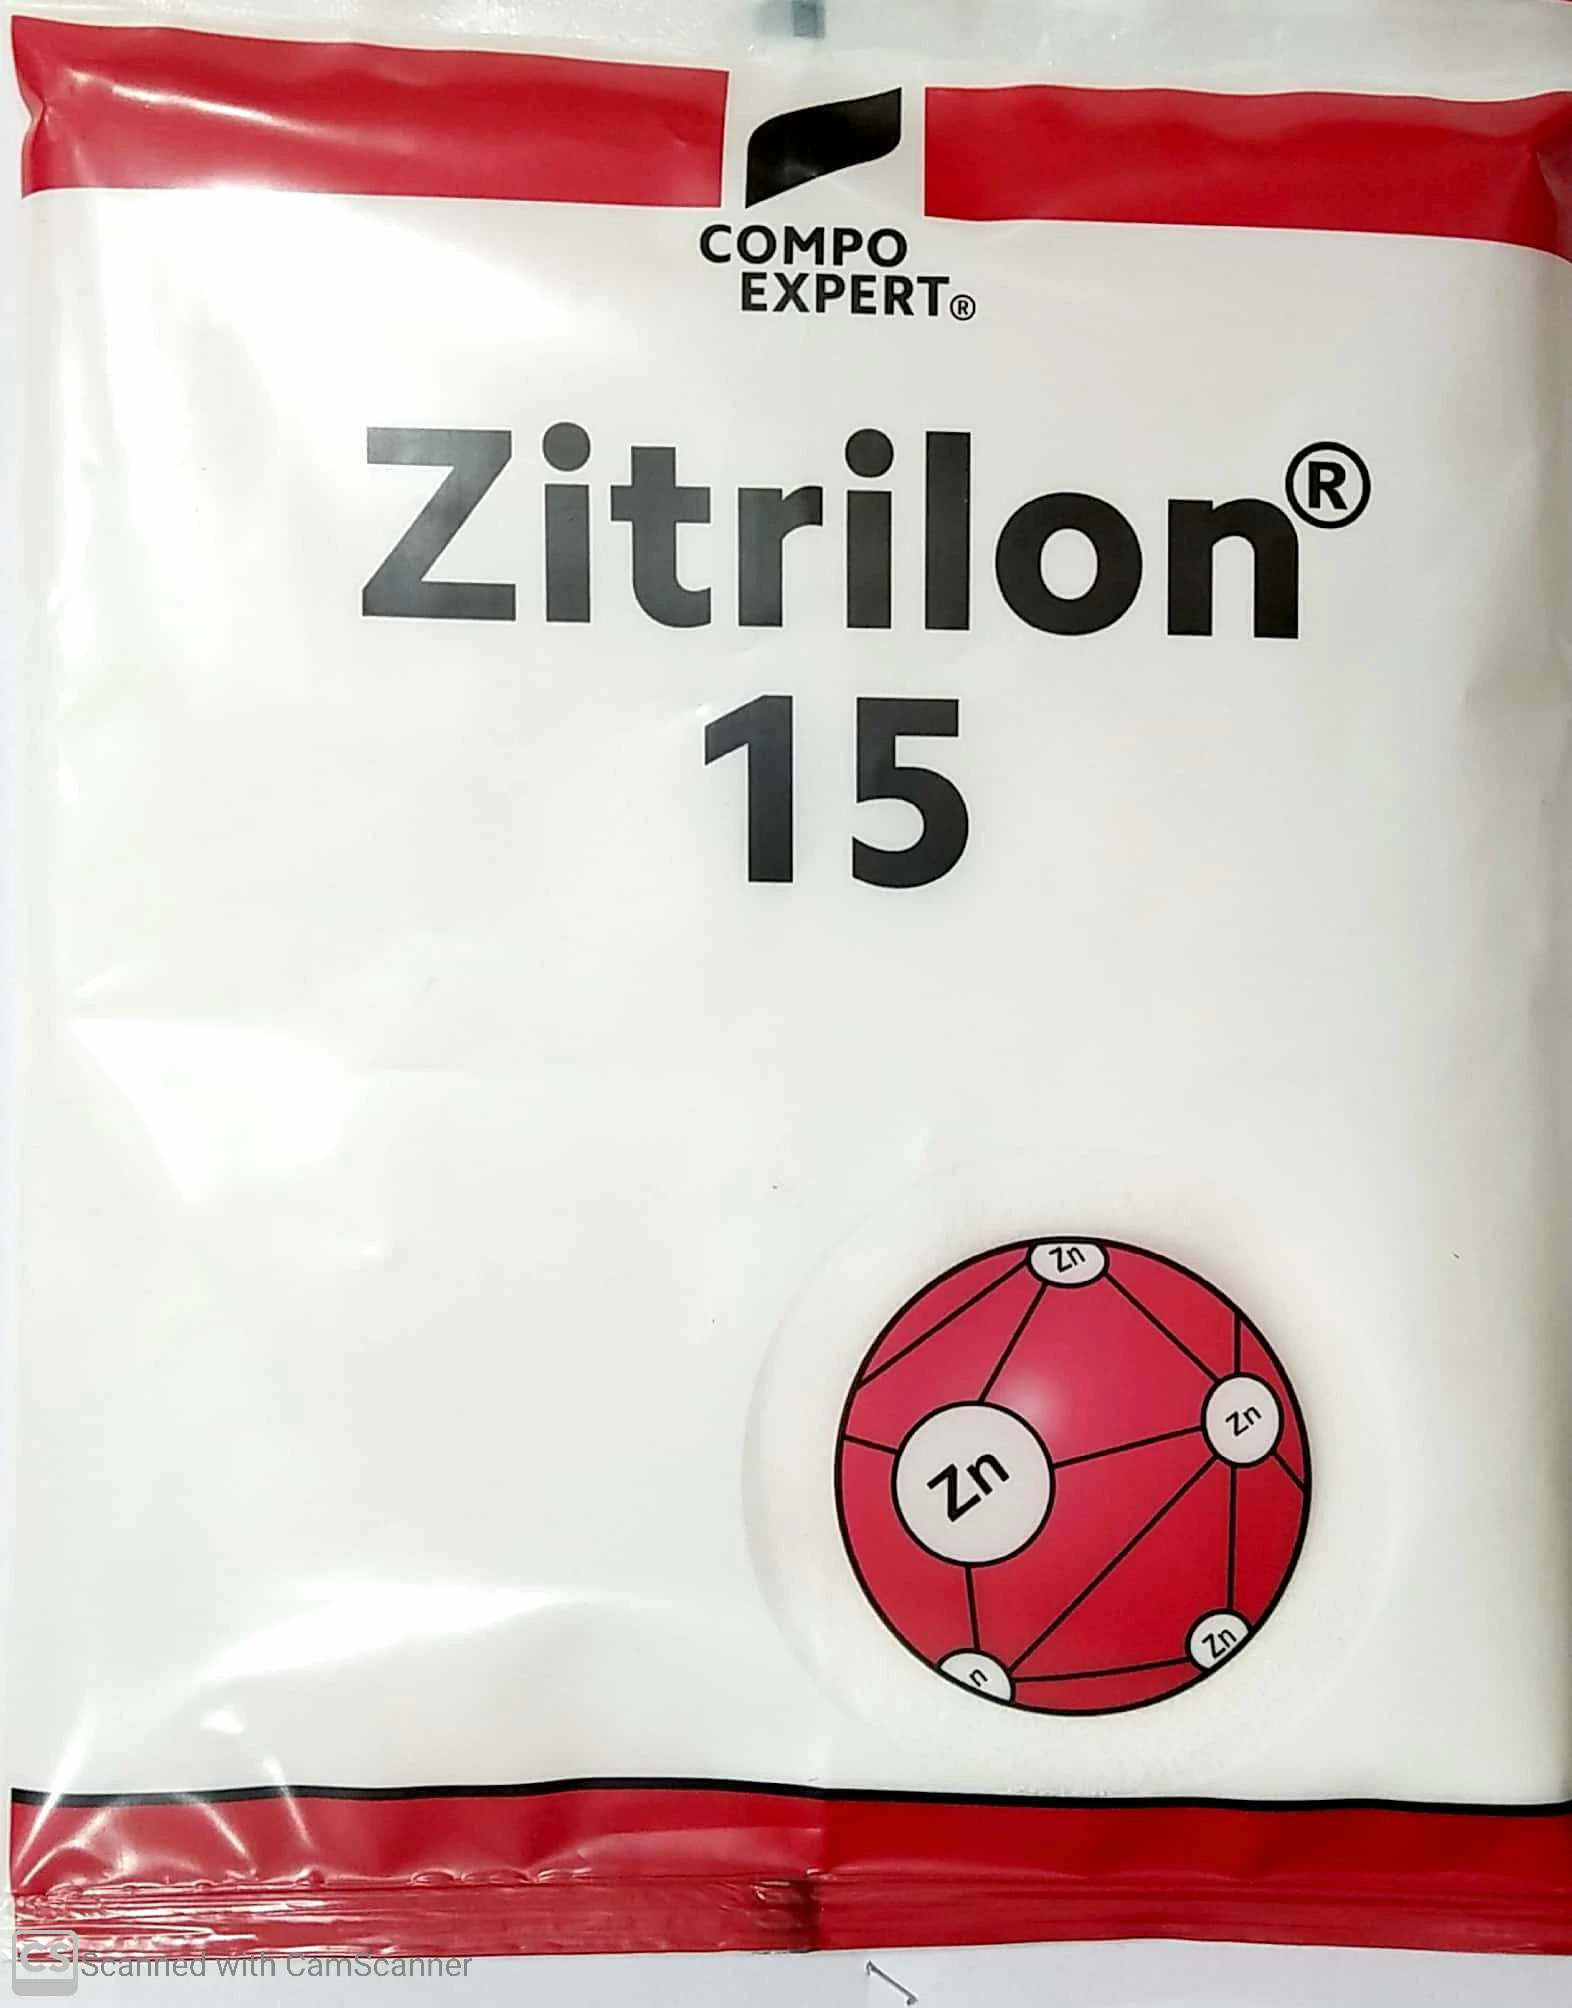 Zitrilon Compo Expert